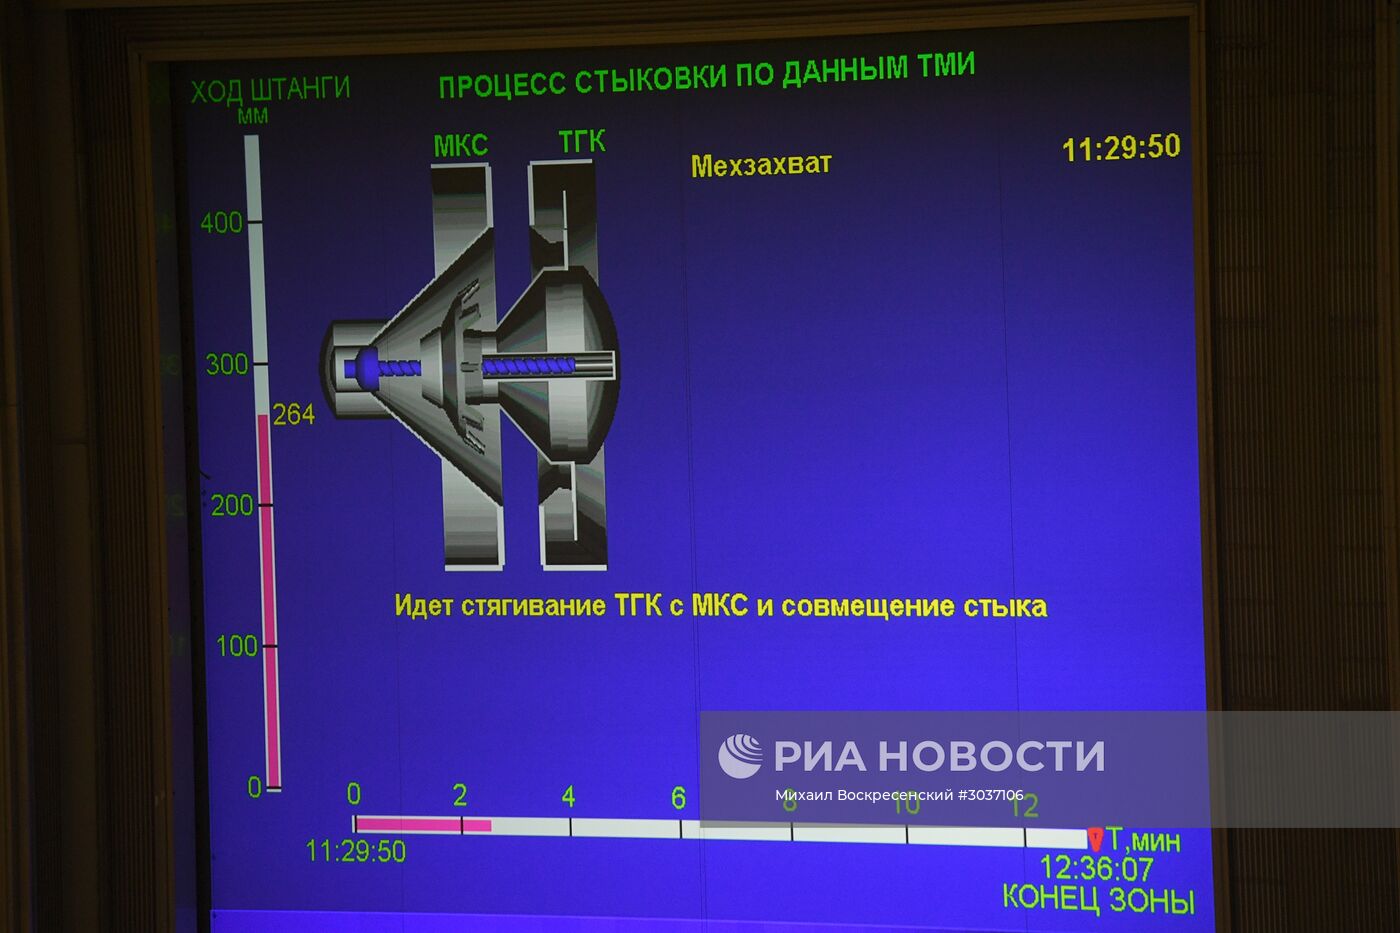 Стыковка грузового корабля "Прогресс МС-05" с МКС